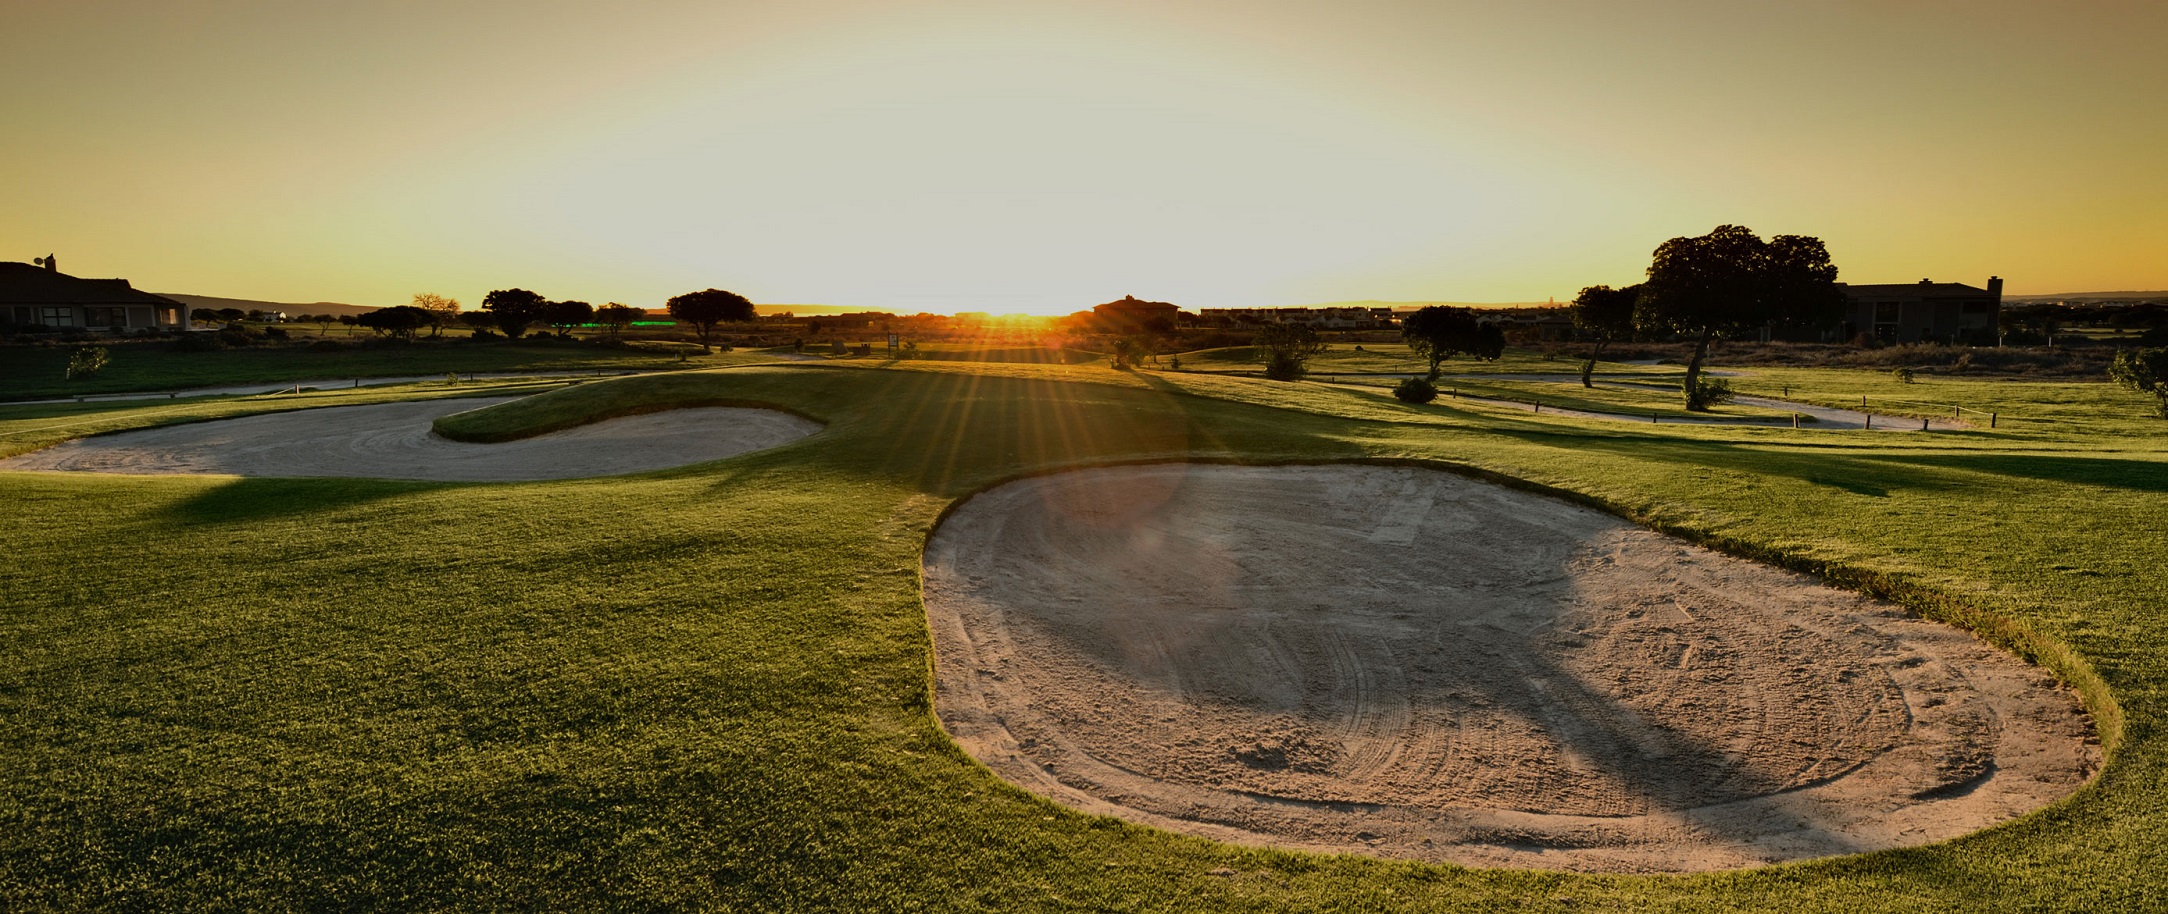 Golf course at sun set